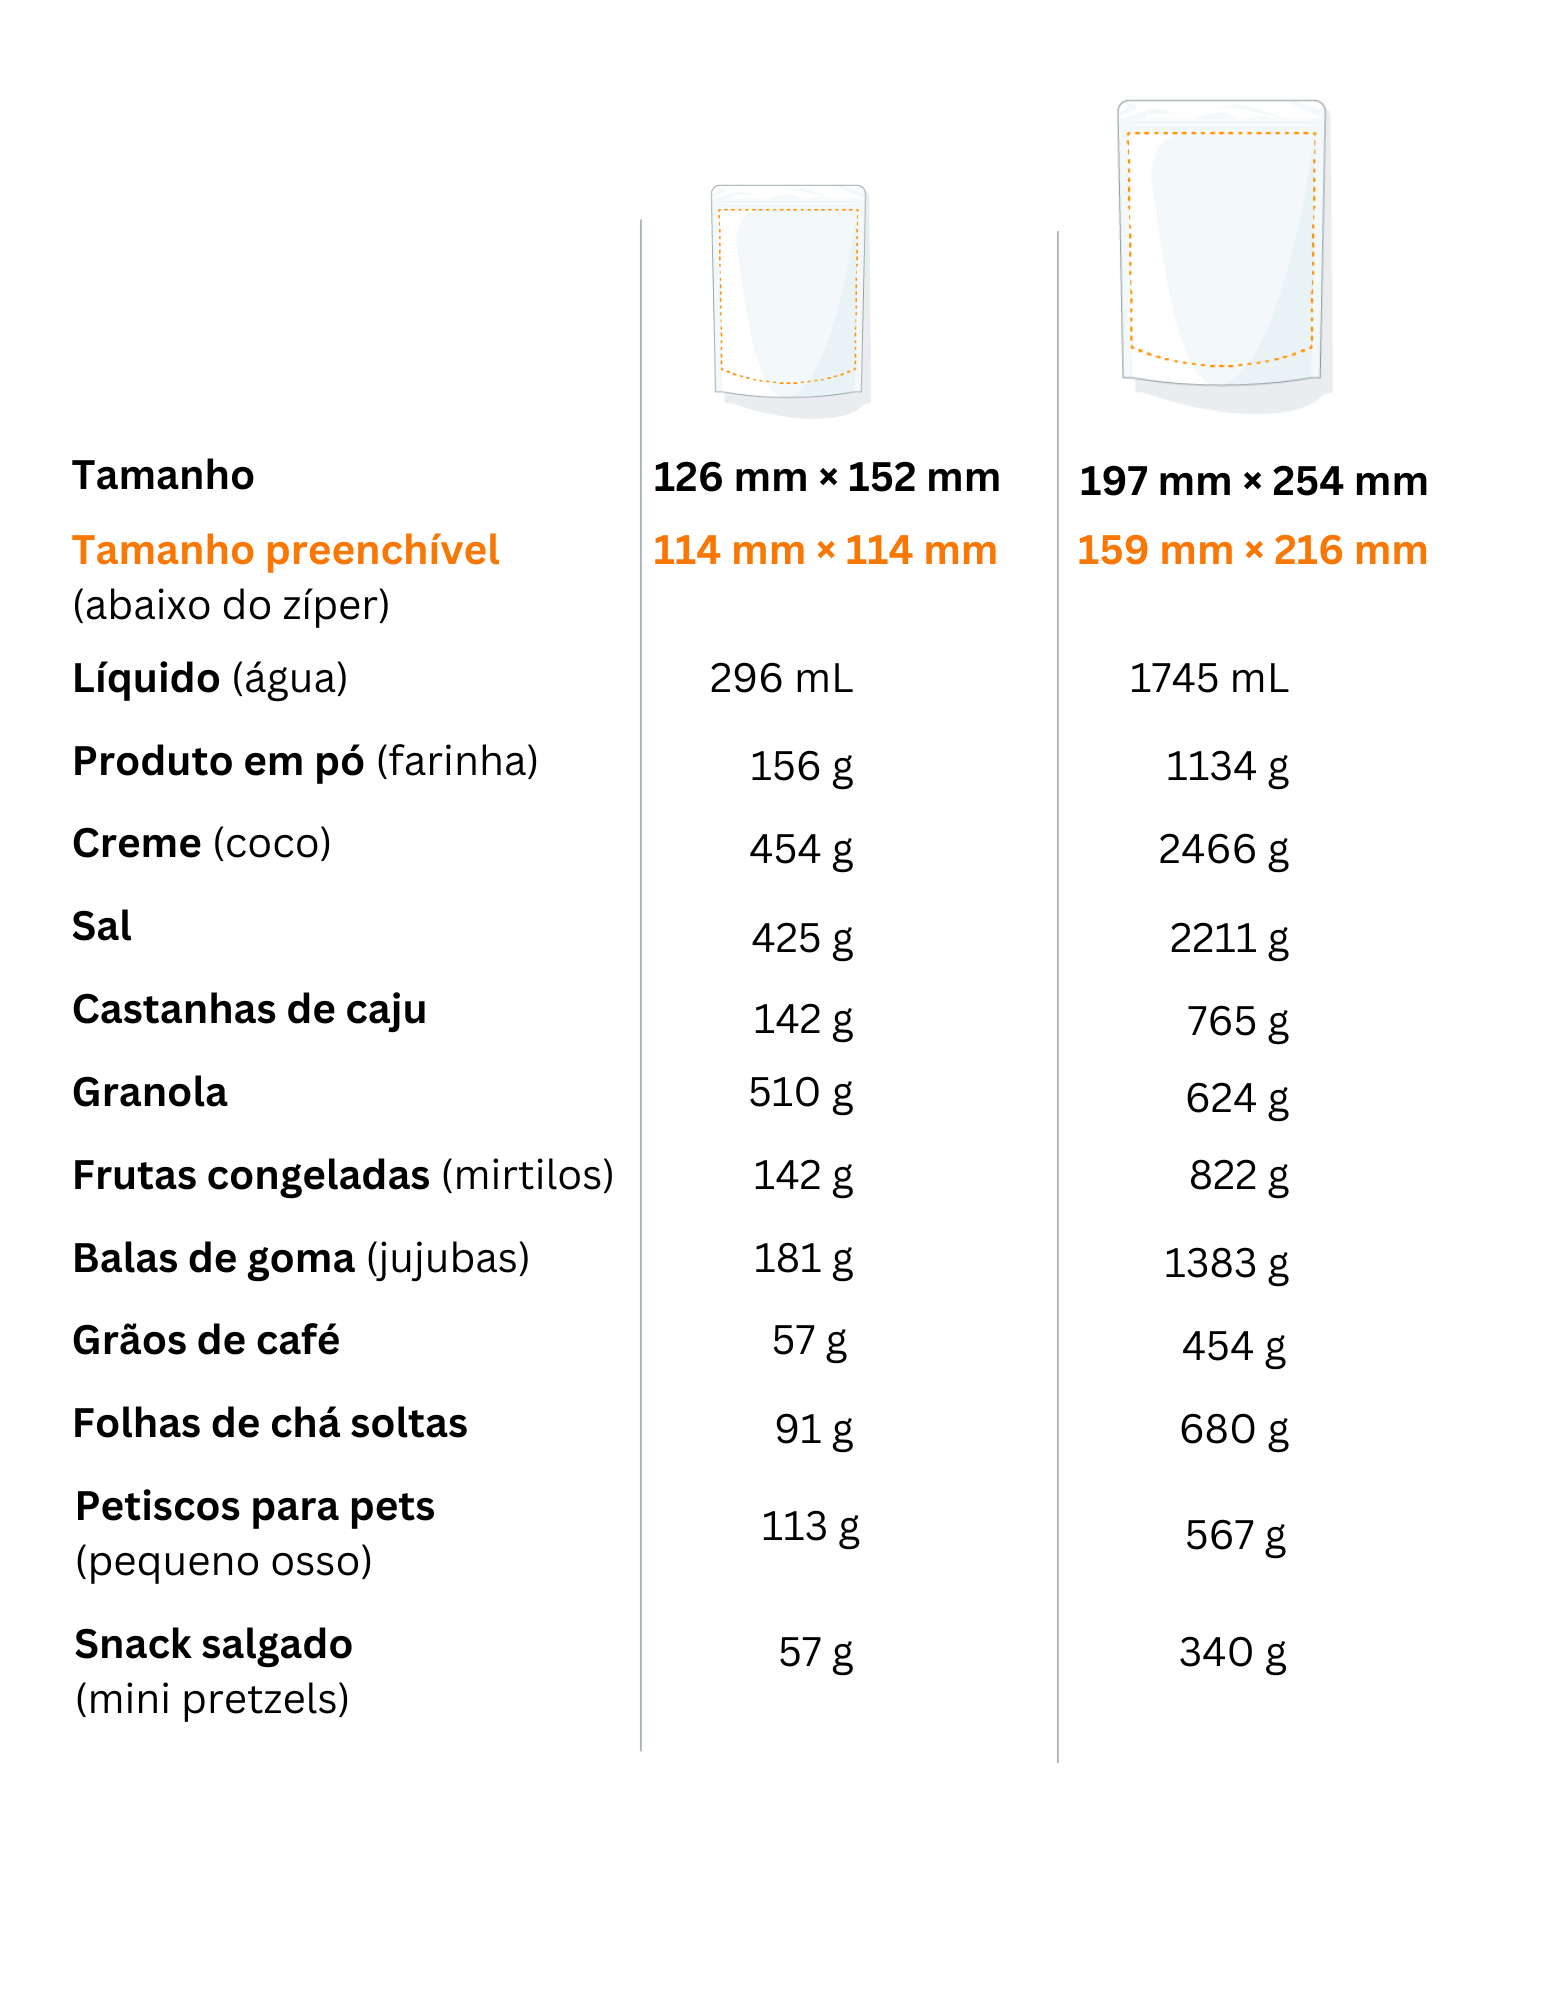 tabela mostrando quantidades de diferentes produtos compatíveis com os sacos stand up pouch